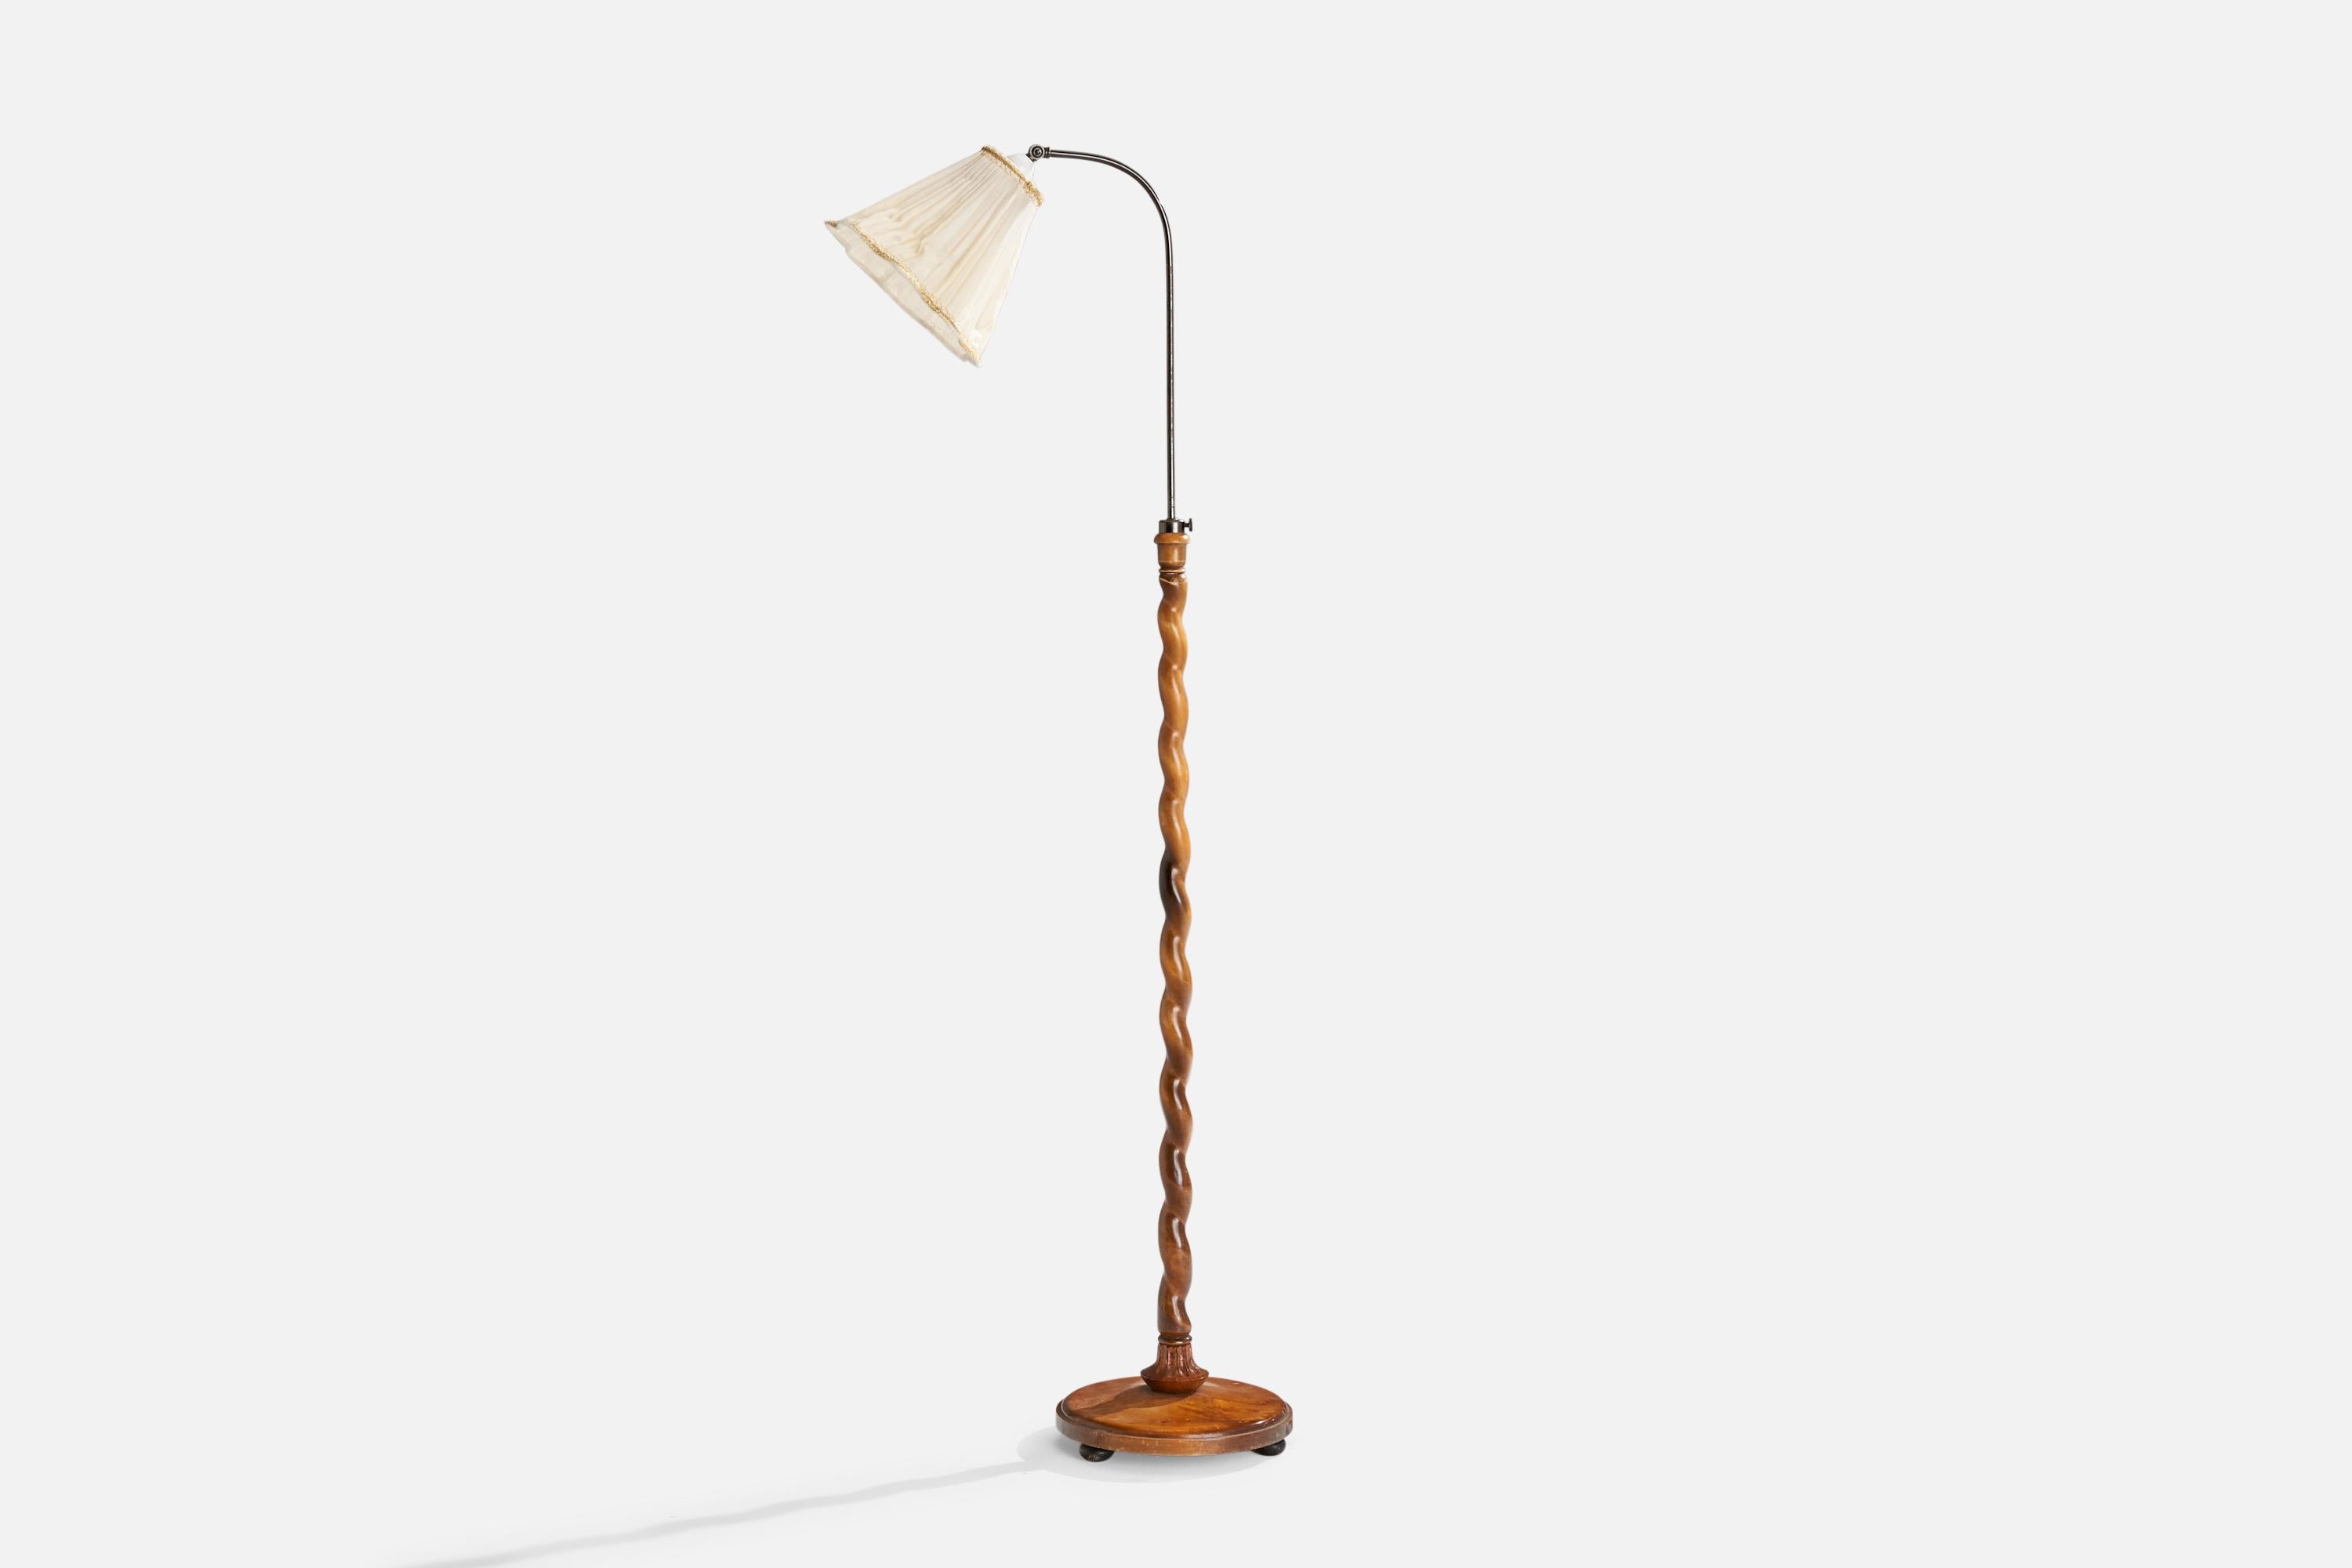 Verstellbare Stehlampe aus Birkenholz, vernickeltem Metall und Stoff, entworfen und hergestellt in Schweden, 1930er Jahre.

Abmessungen variabel 
Gesamtabmessungen (Zoll): 61